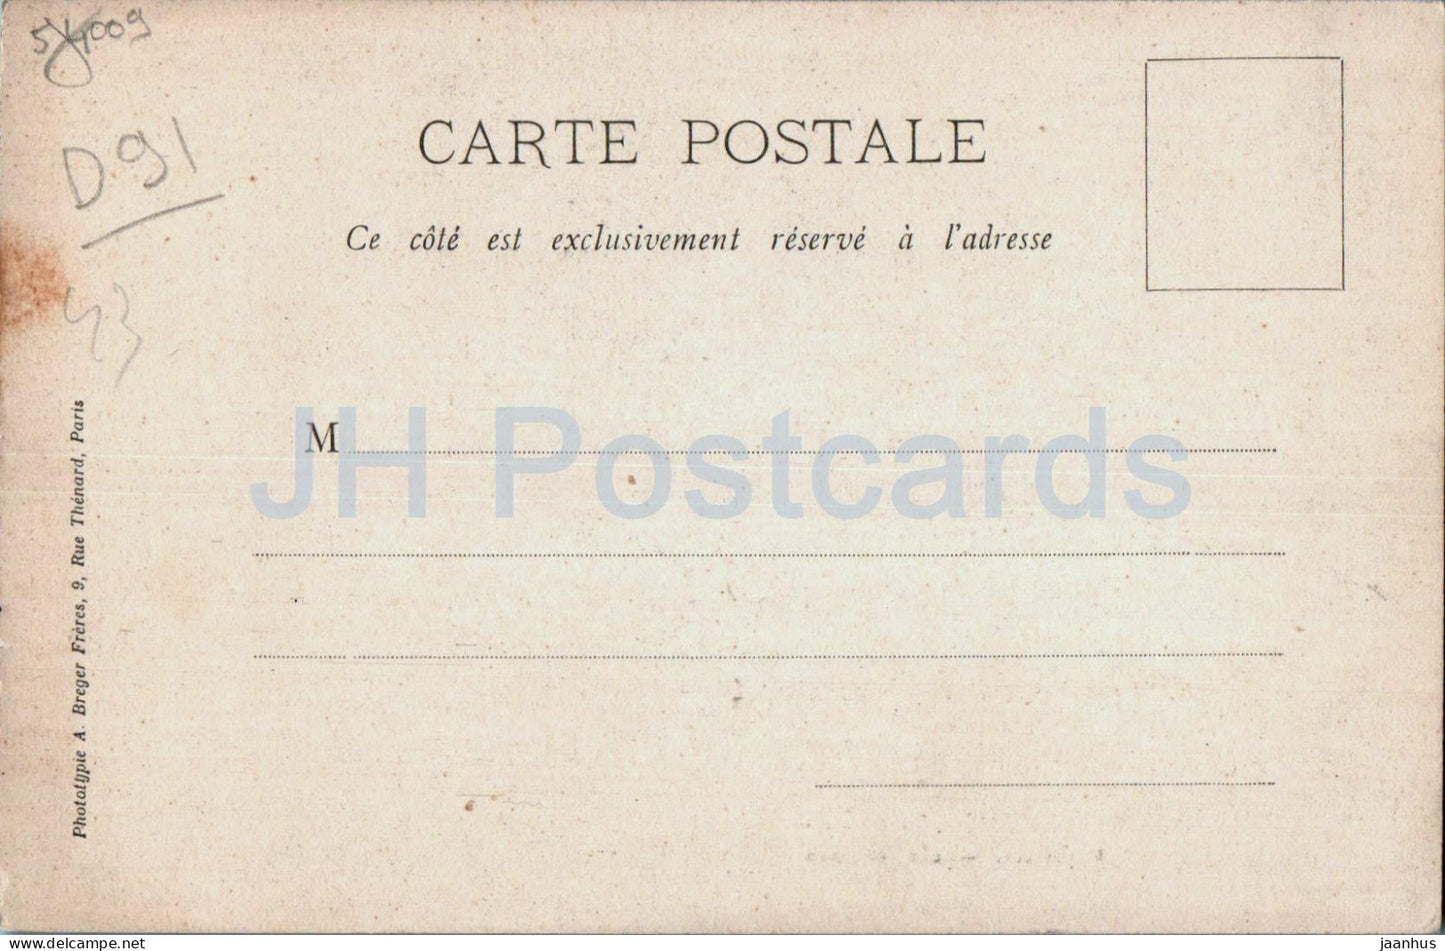 Mereville - Les Grottes - cave - old postcard - France - unused